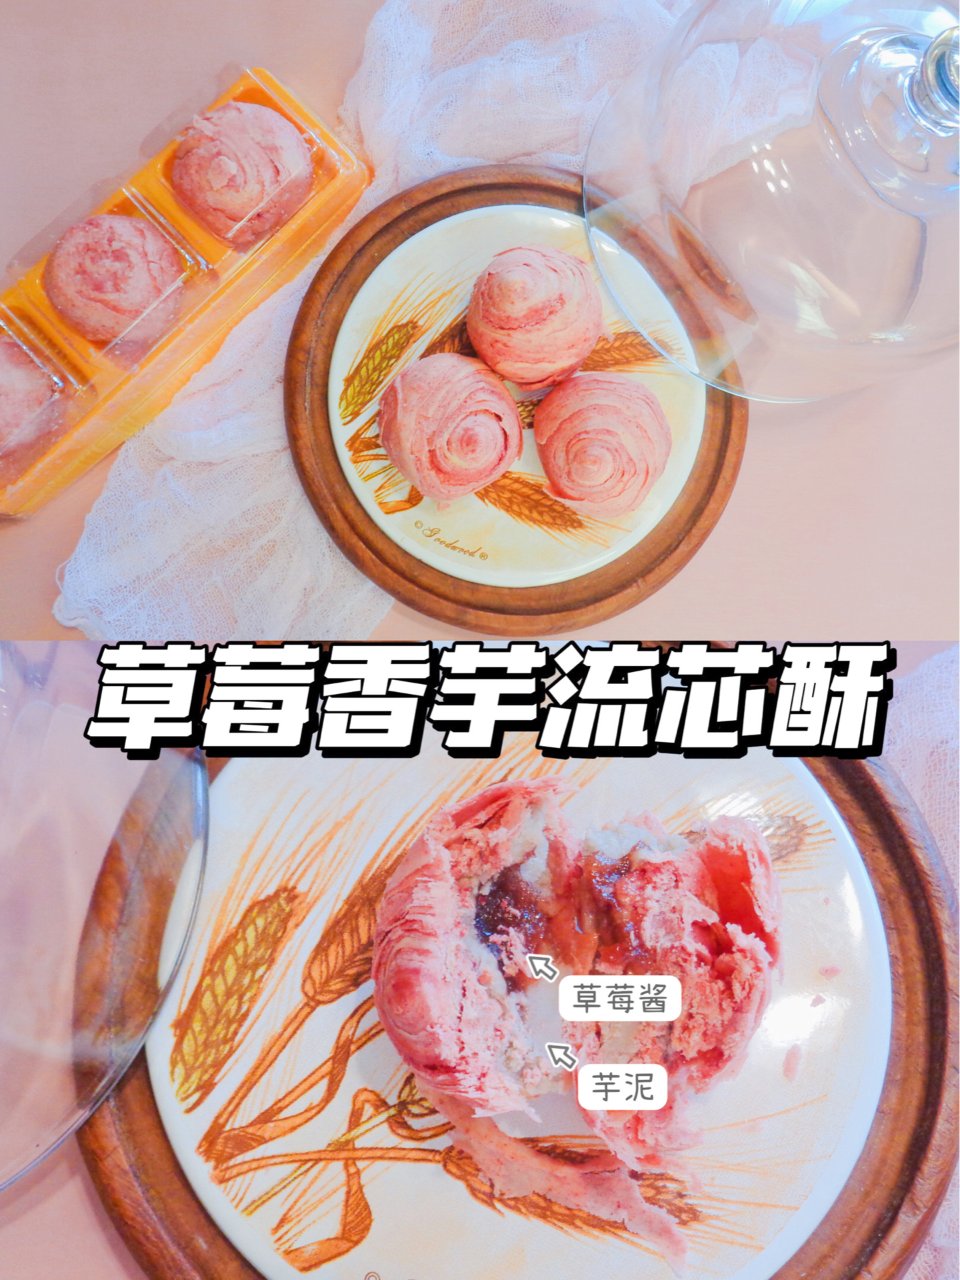 好吃到让你留心❤——台湾草莓香芋流芯酥🍓...